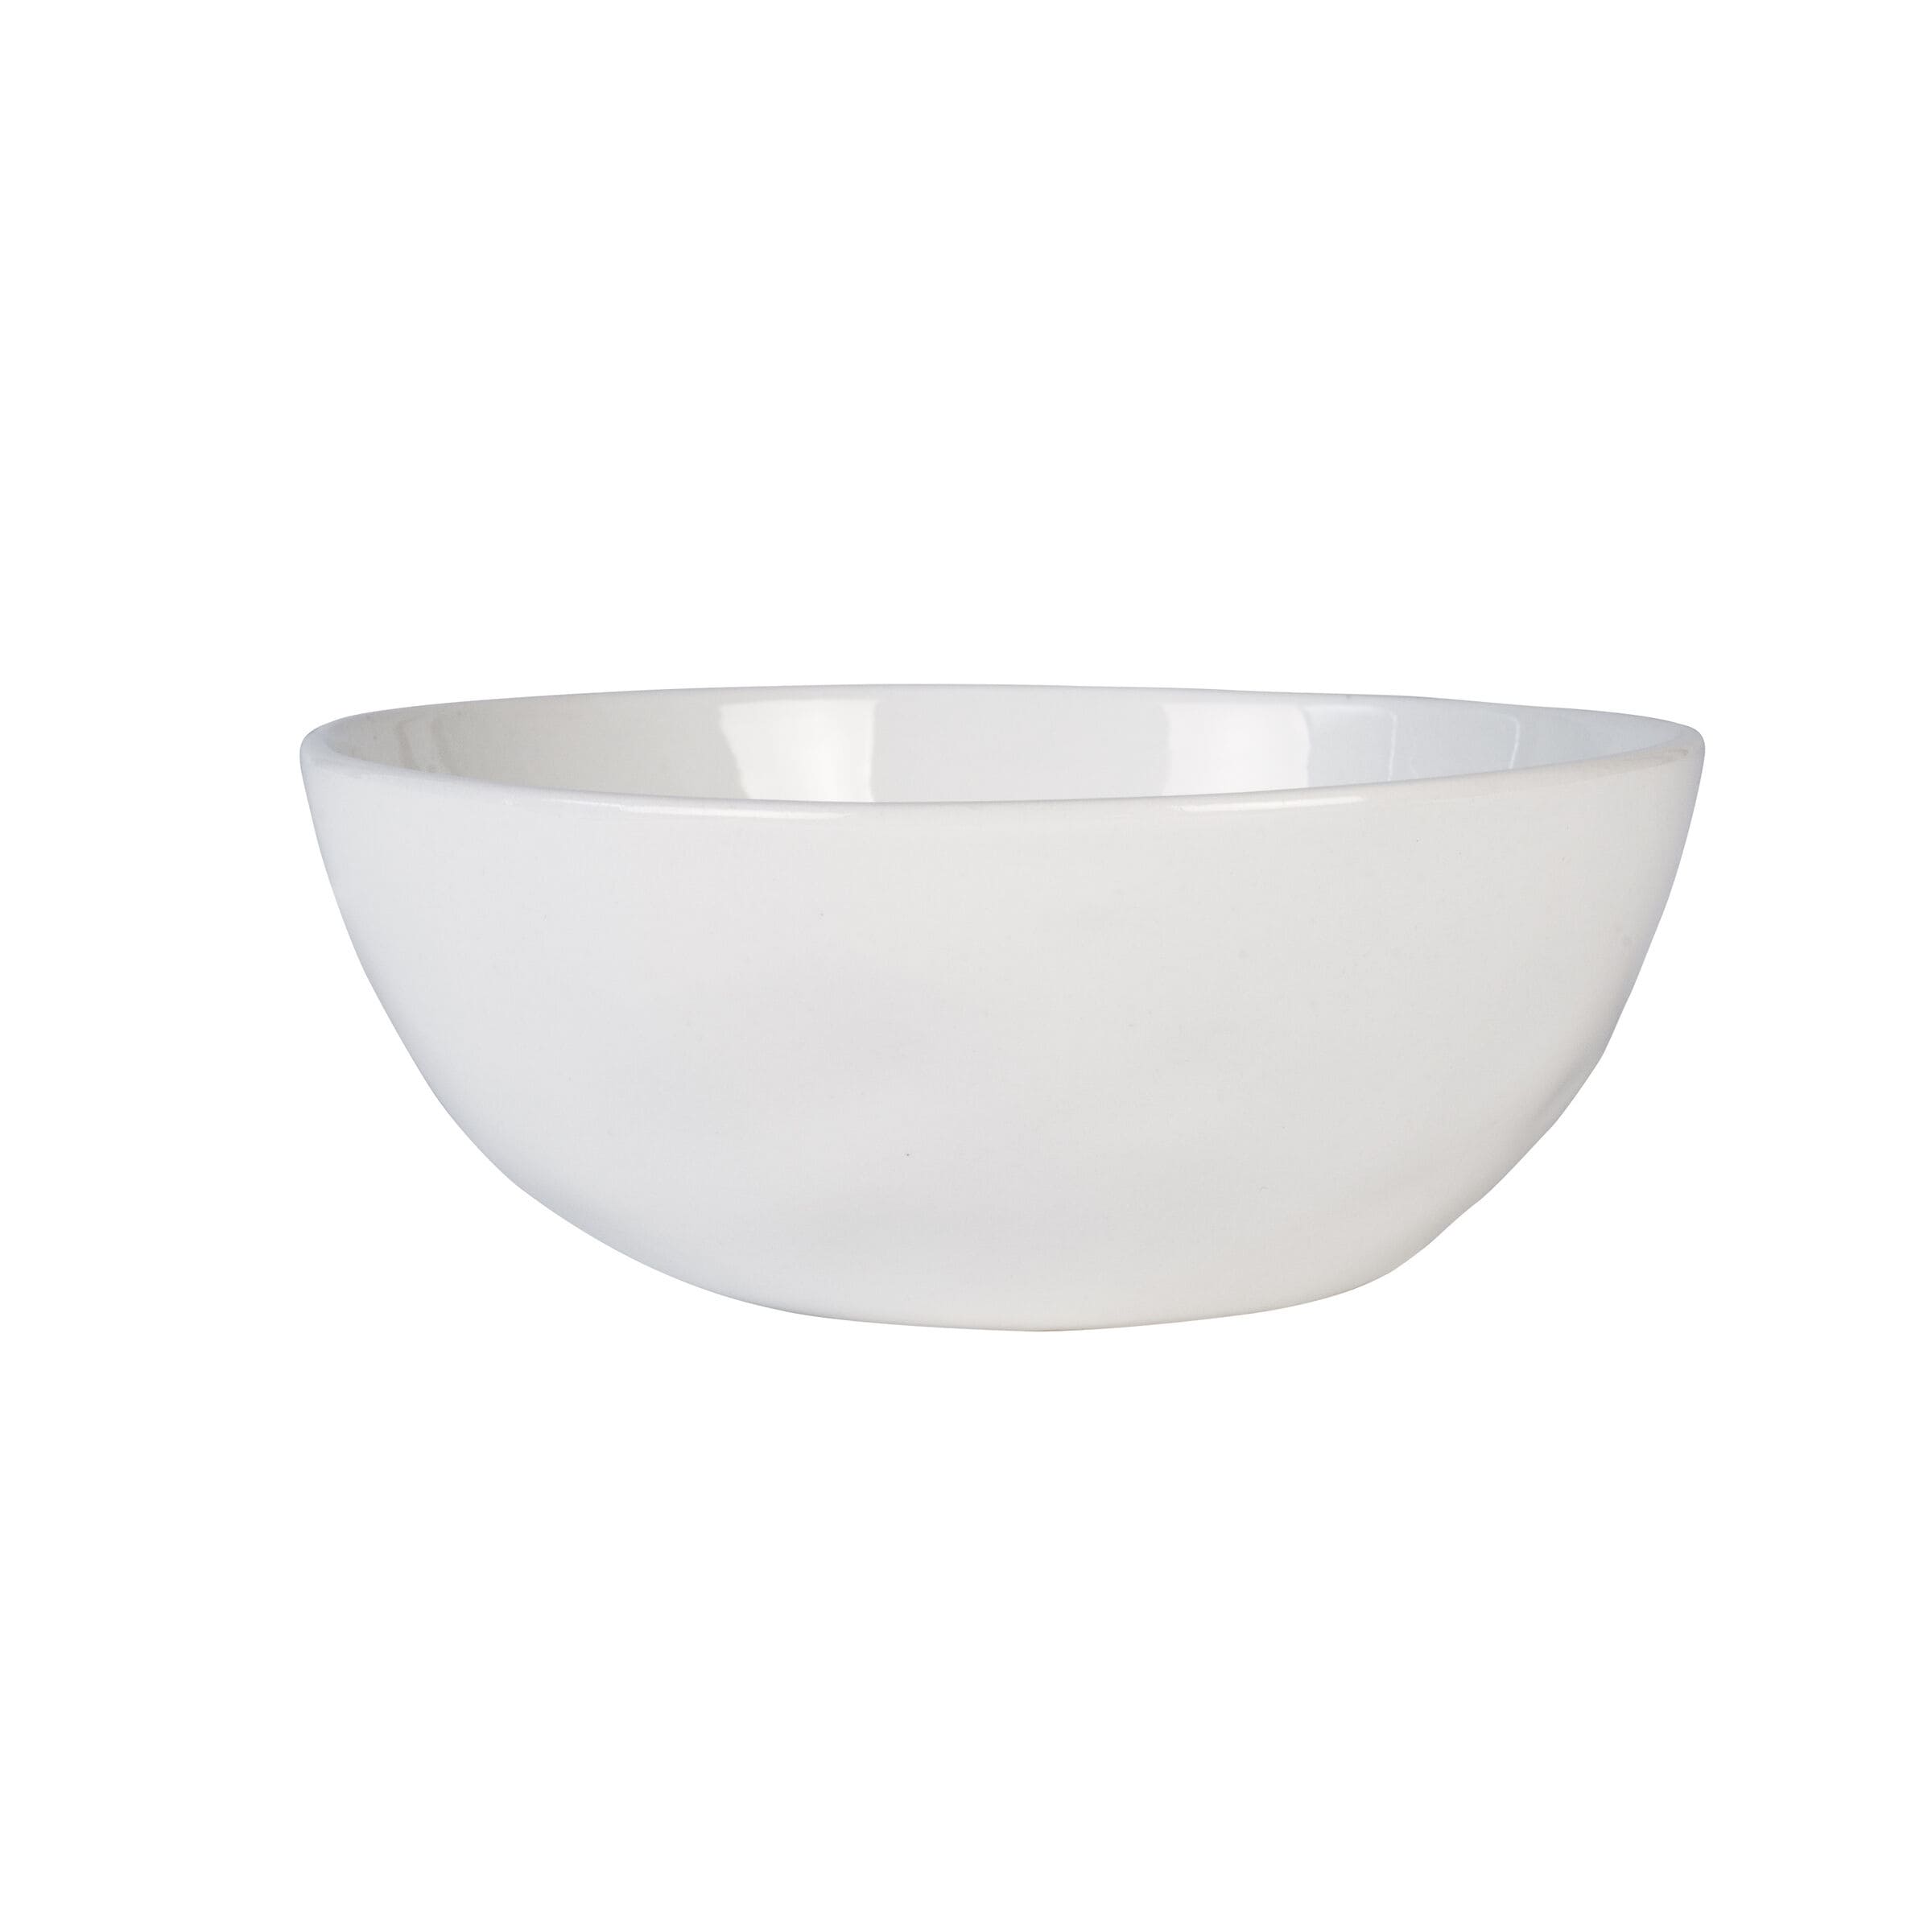 Porcelain Dining Bowls - Bed Bath & Beyond